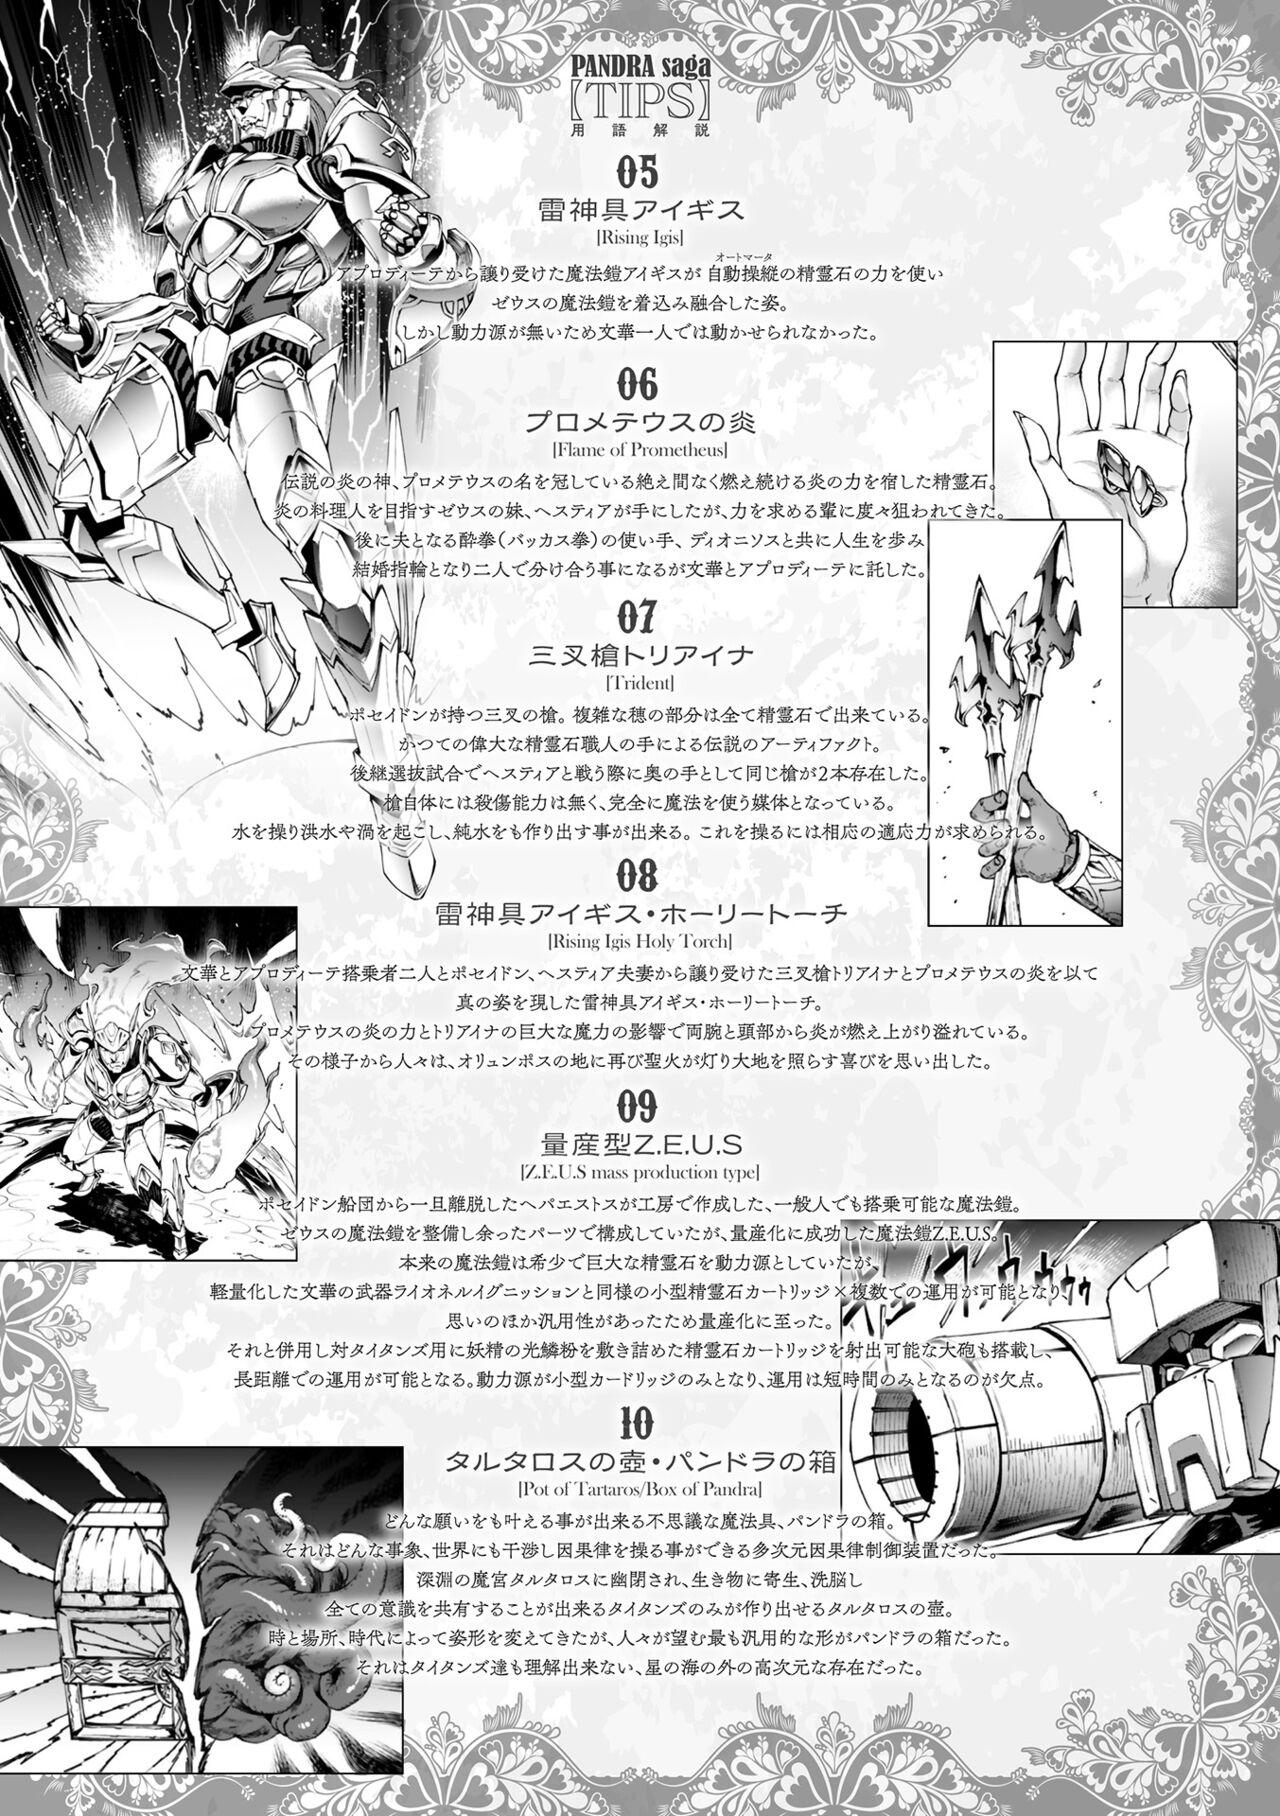 [Erect Sawaru] Raikou Shinki Igis Magia III -PANDRA saga 3rd ignition- 4 [Digital] 268